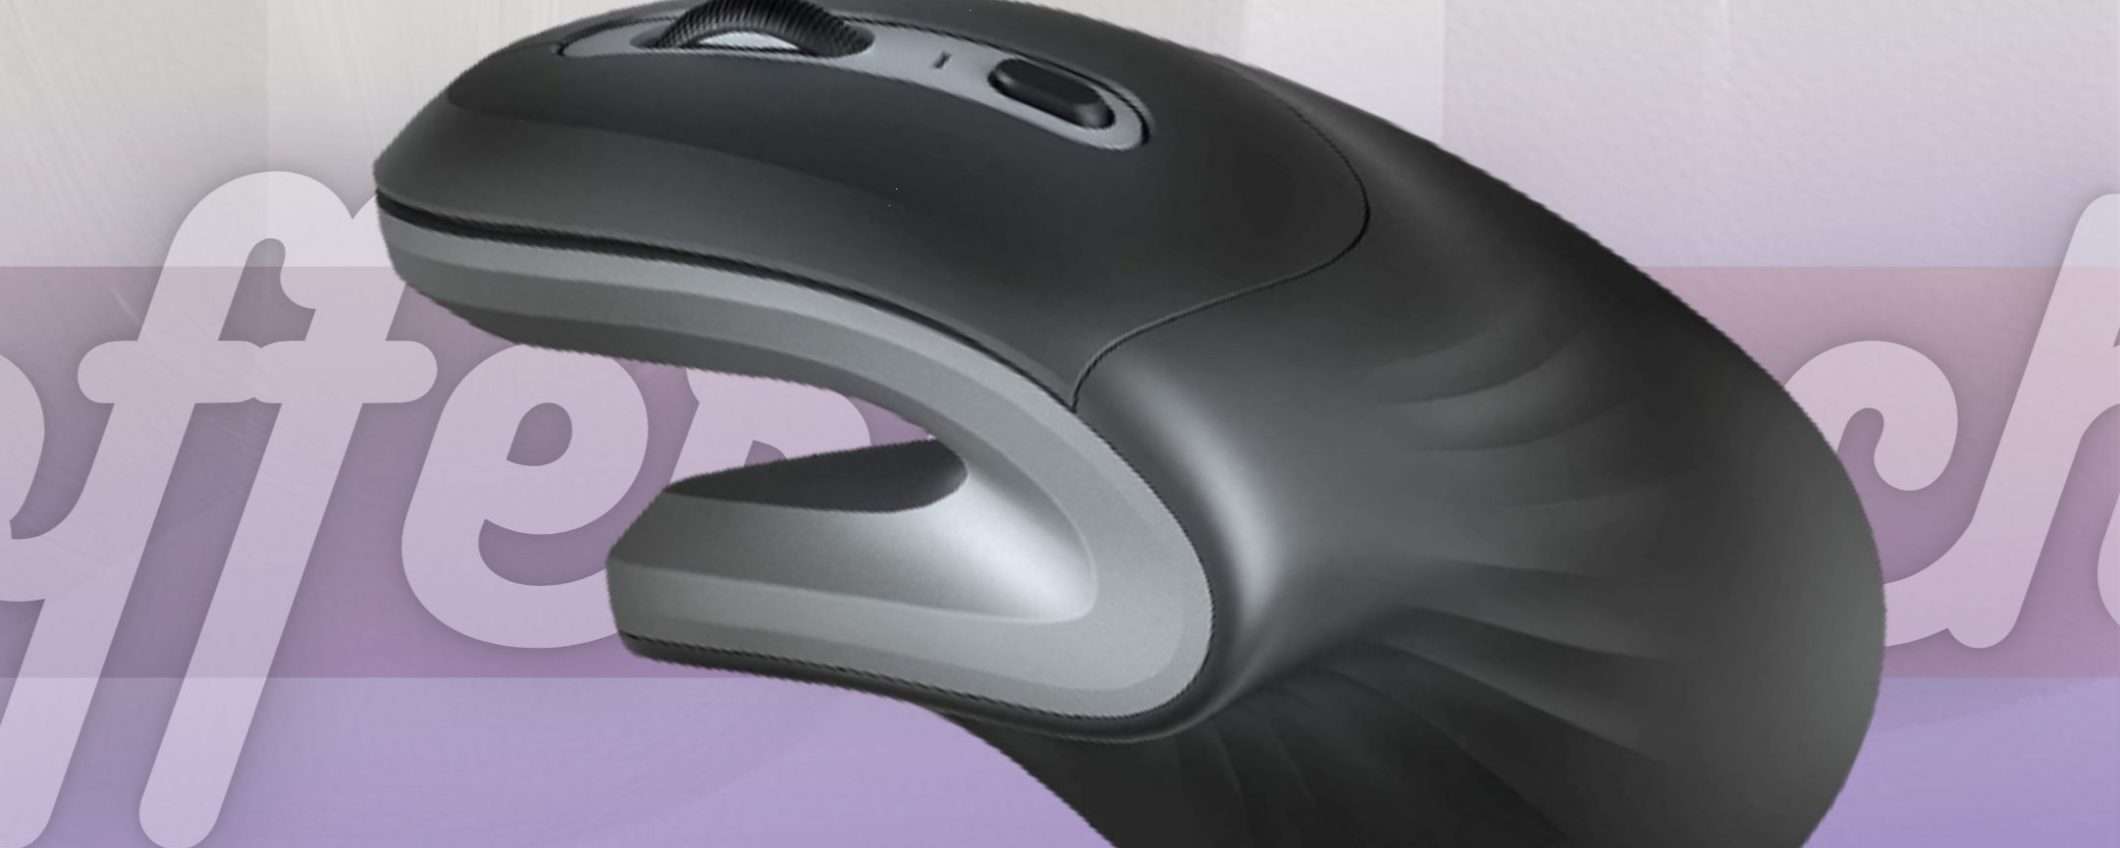 Trust Verro: il mouse verticale super ergonomico e UNICO